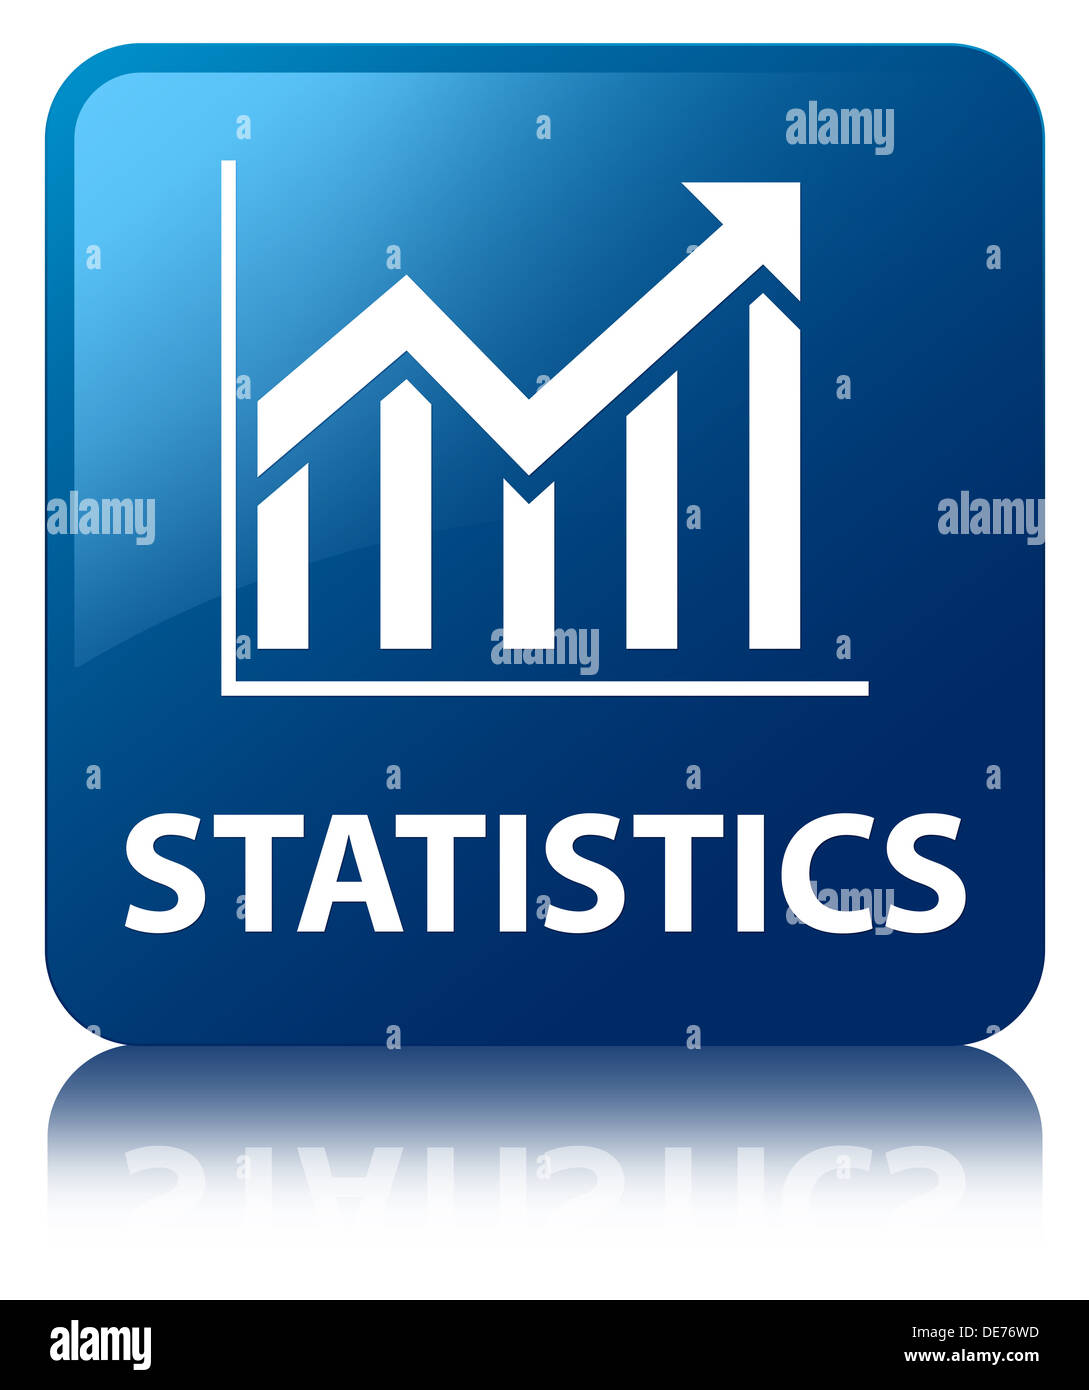 Statistics blue square button Stock Photo